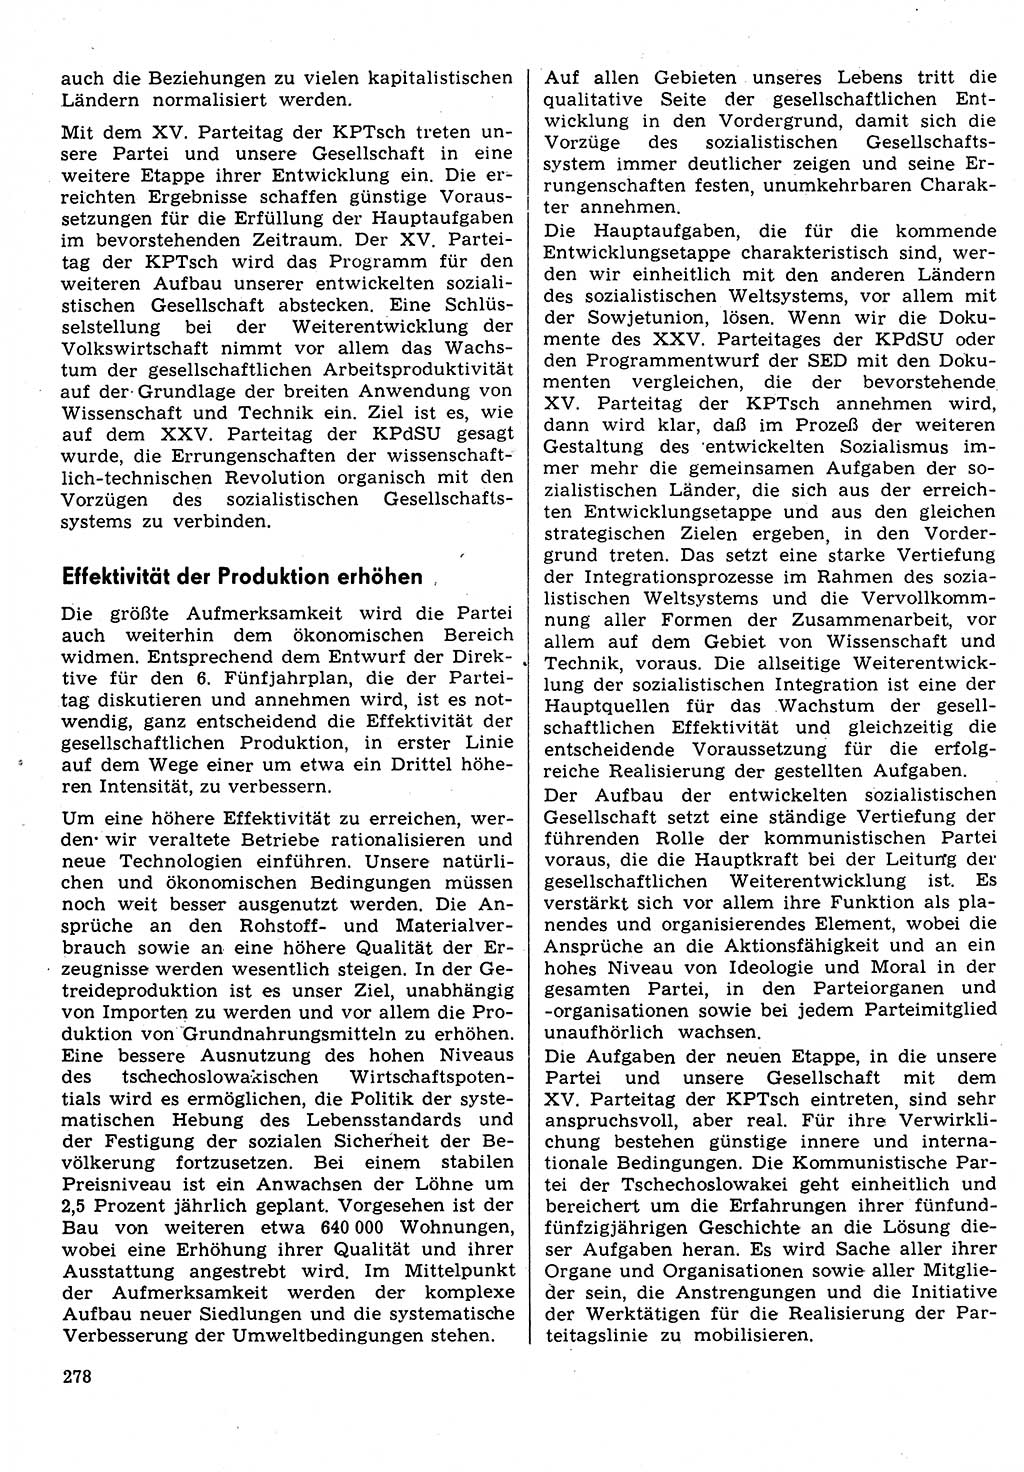 Neuer Weg (NW), Organ des Zentralkomitees (ZK) der SED (Sozialistische Einheitspartei Deutschlands) für Fragen des Parteilebens, 31. Jahrgang [Deutsche Demokratische Republik (DDR)] 1976, Seite 278 (NW ZK SED DDR 1976, S. 278)